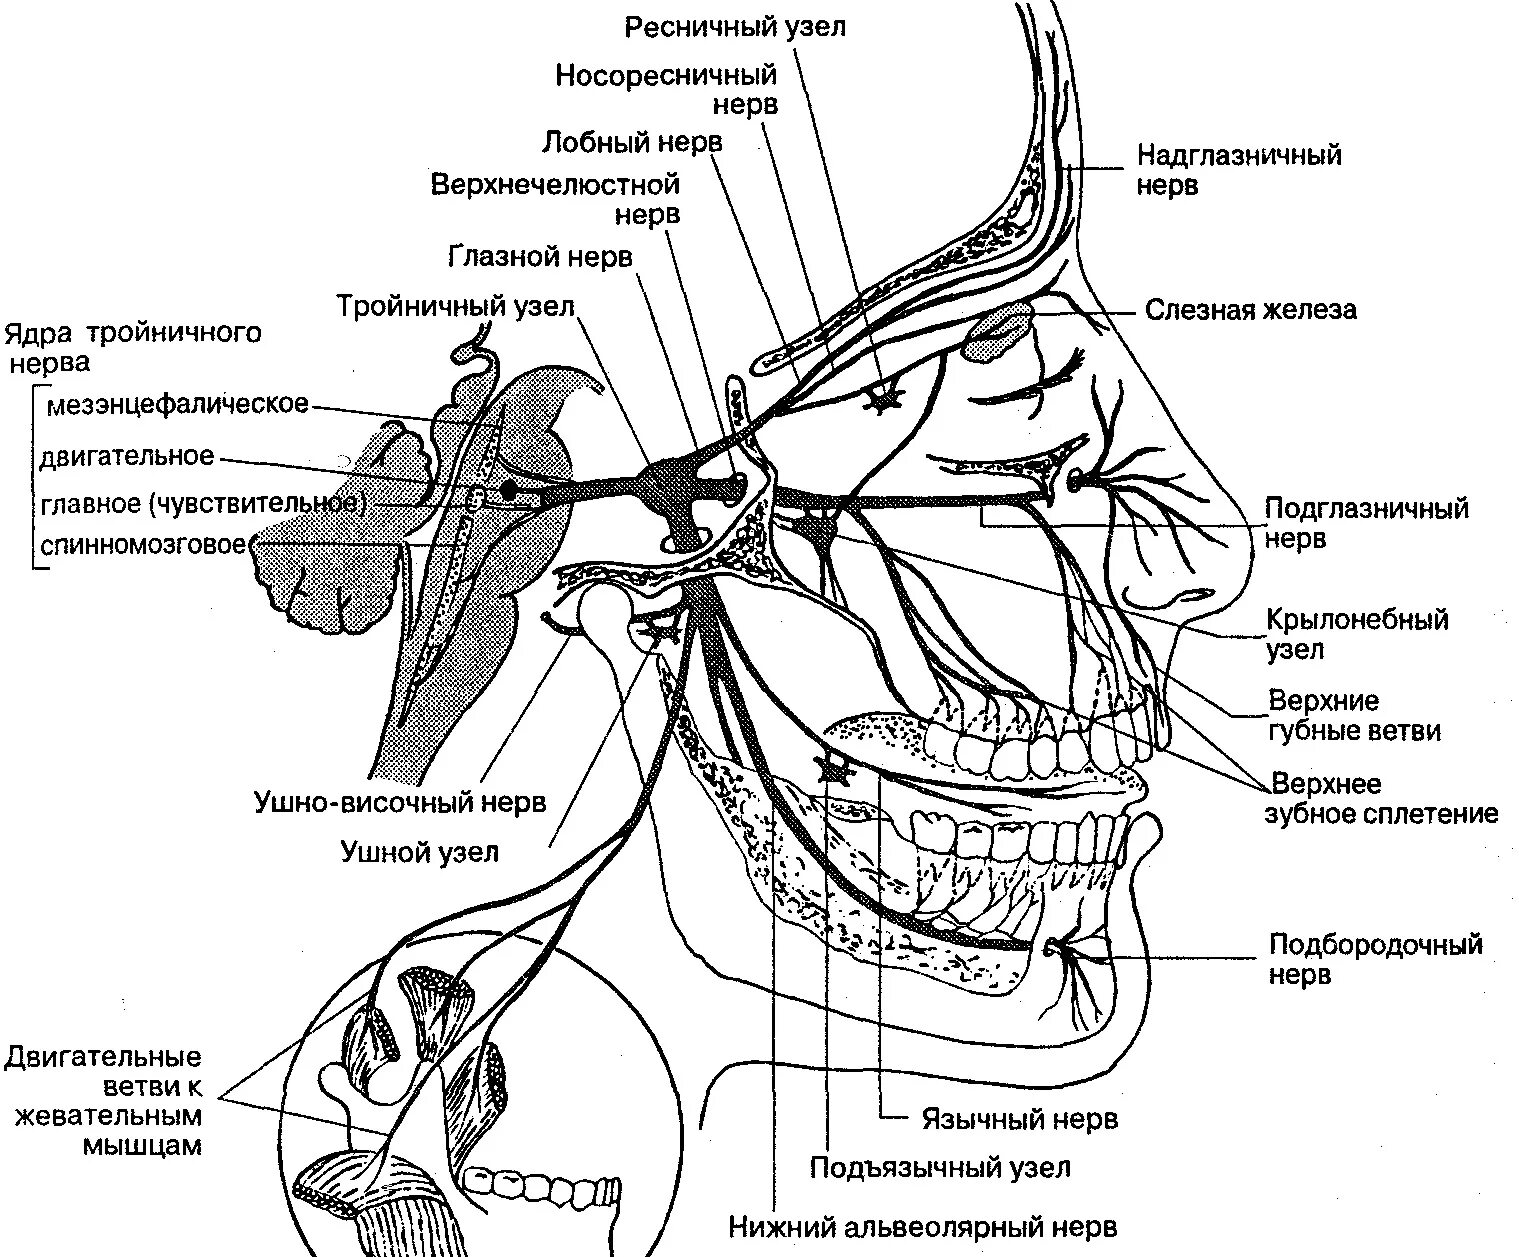 Лицевой нерв слева. Ветви тройничного нерва анатомия. Схема проекции ветвей тройничного нерва. Иннервация тройничного нерва схема. Узлы тройничного нерва анатомия.